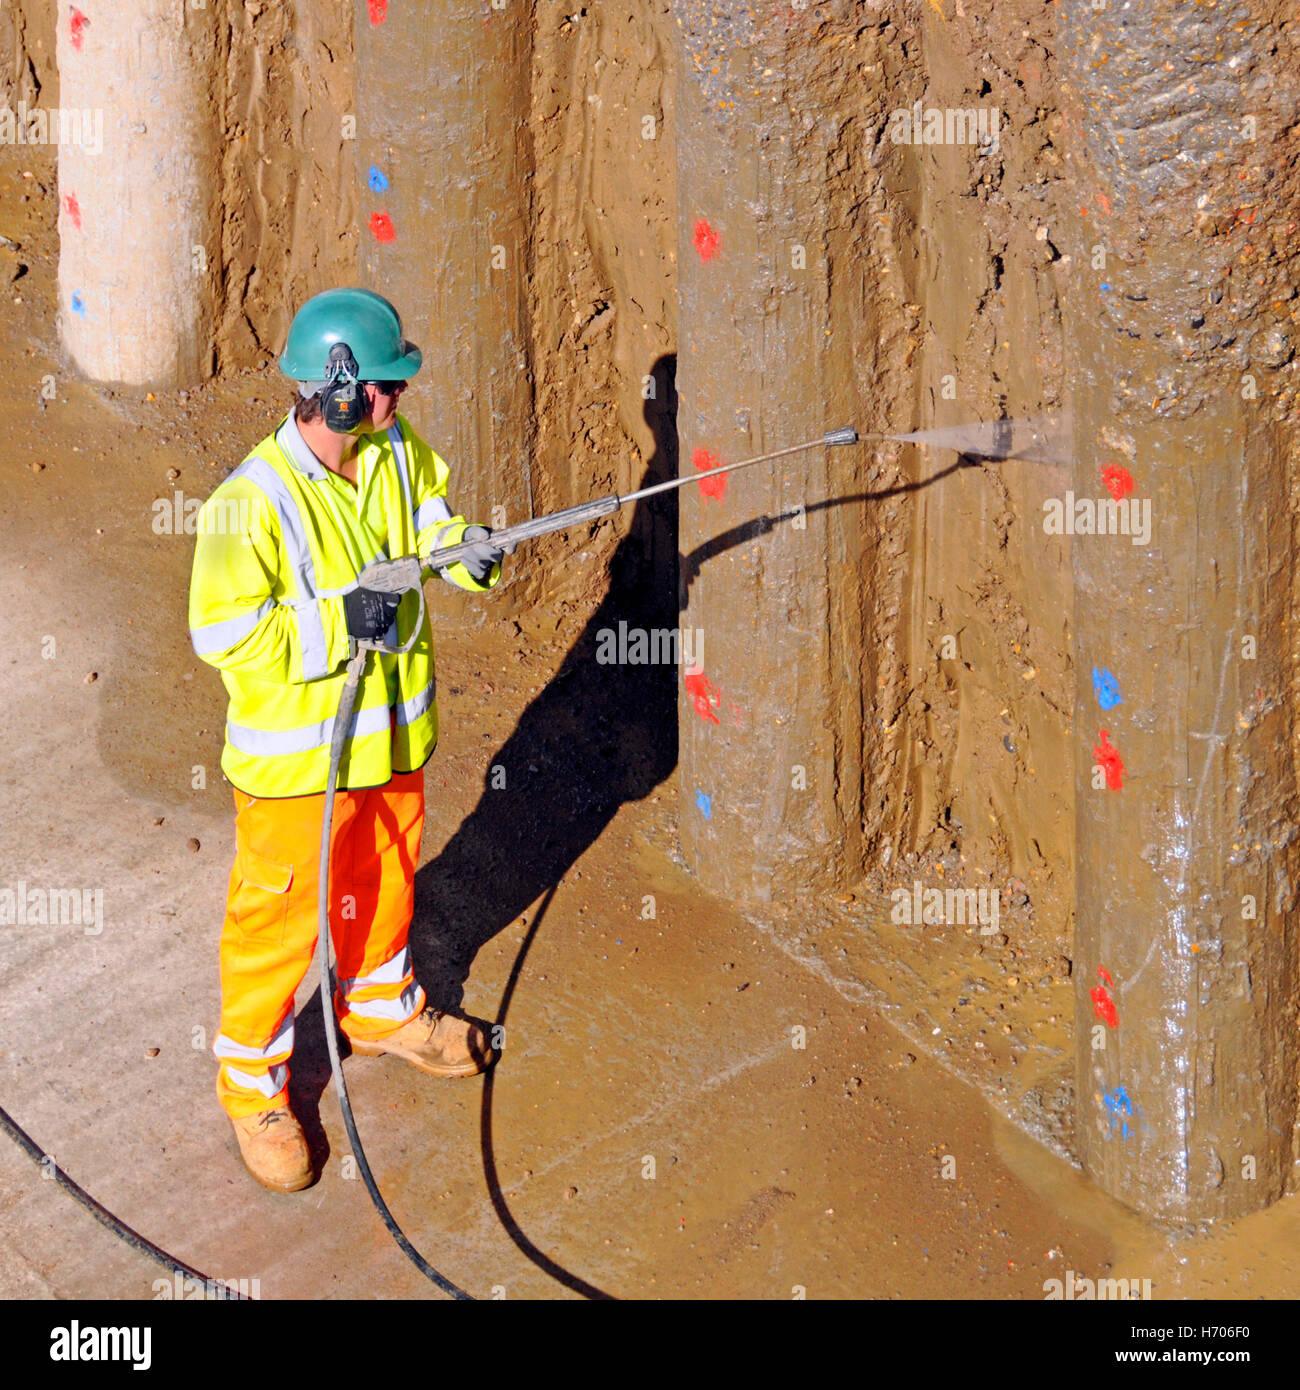 Mur de soutènement sur le chantier de construction du bâtiment eau haute pression Jet d'argile propre de nouveaux pieux de béton autoroute M25 élargissement Essex Angleterre Royaume-Uni Banque D'Images